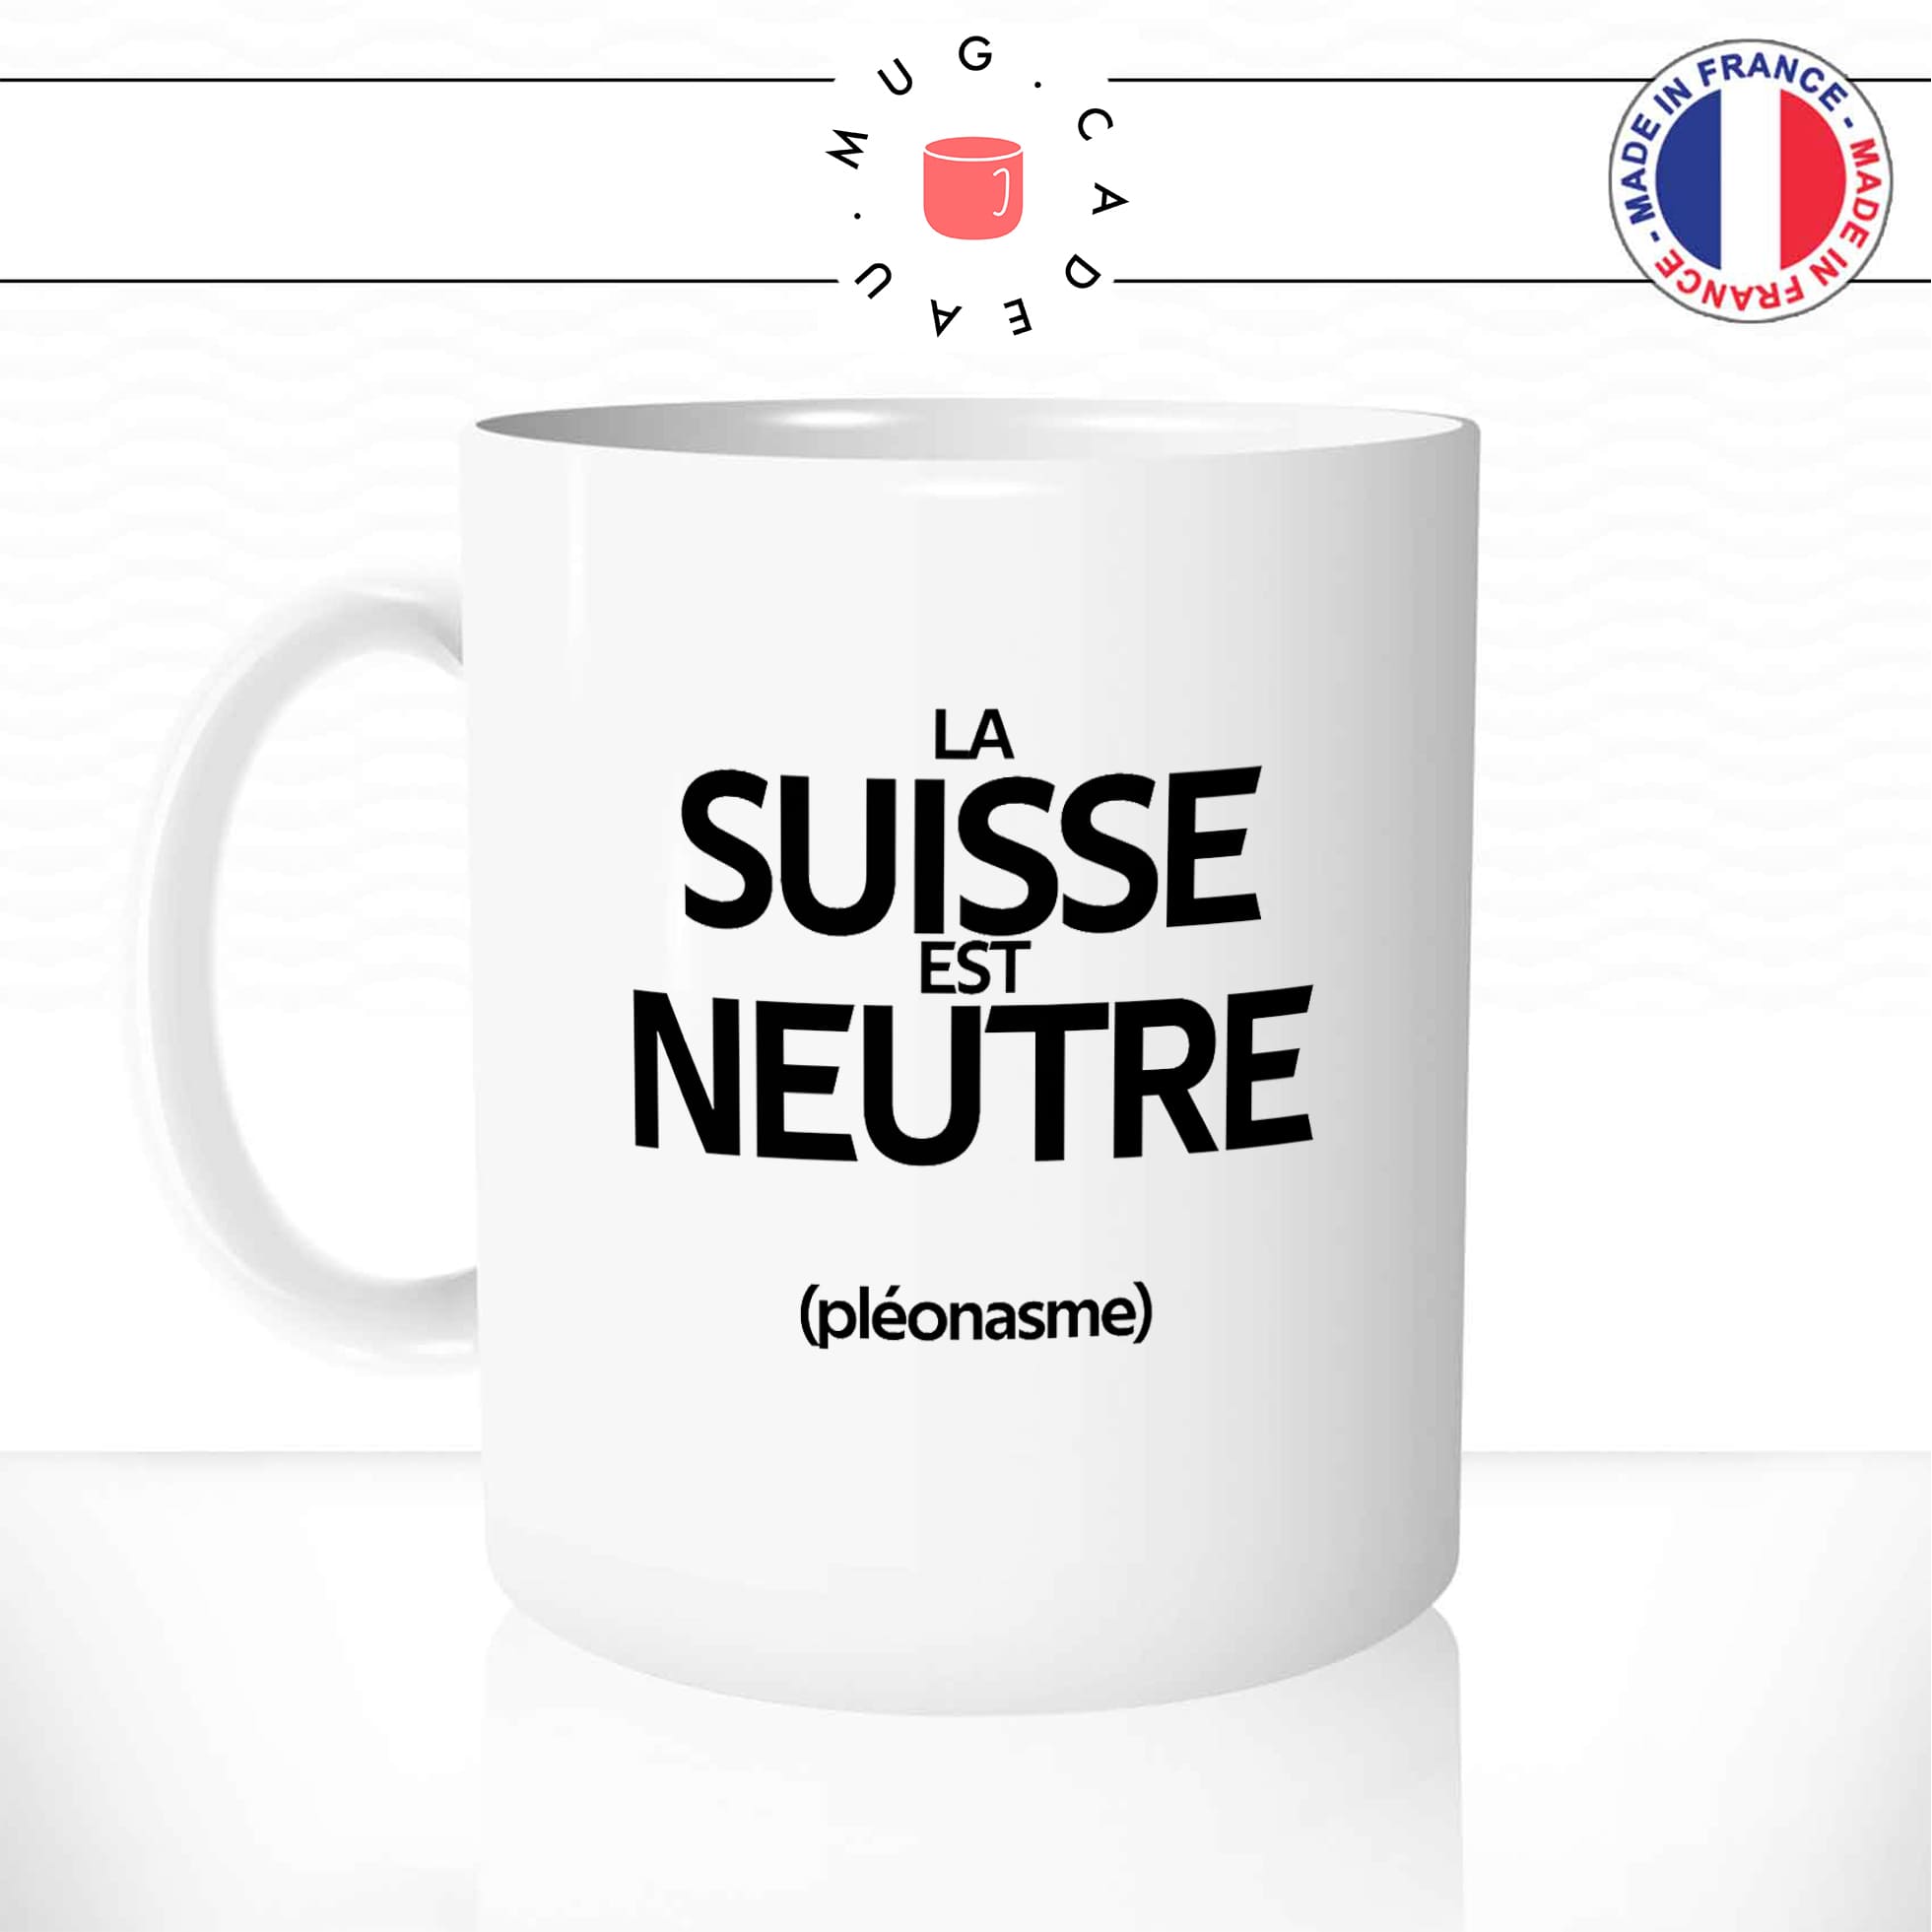 Mug Suisse Neutre (Pléonasme)